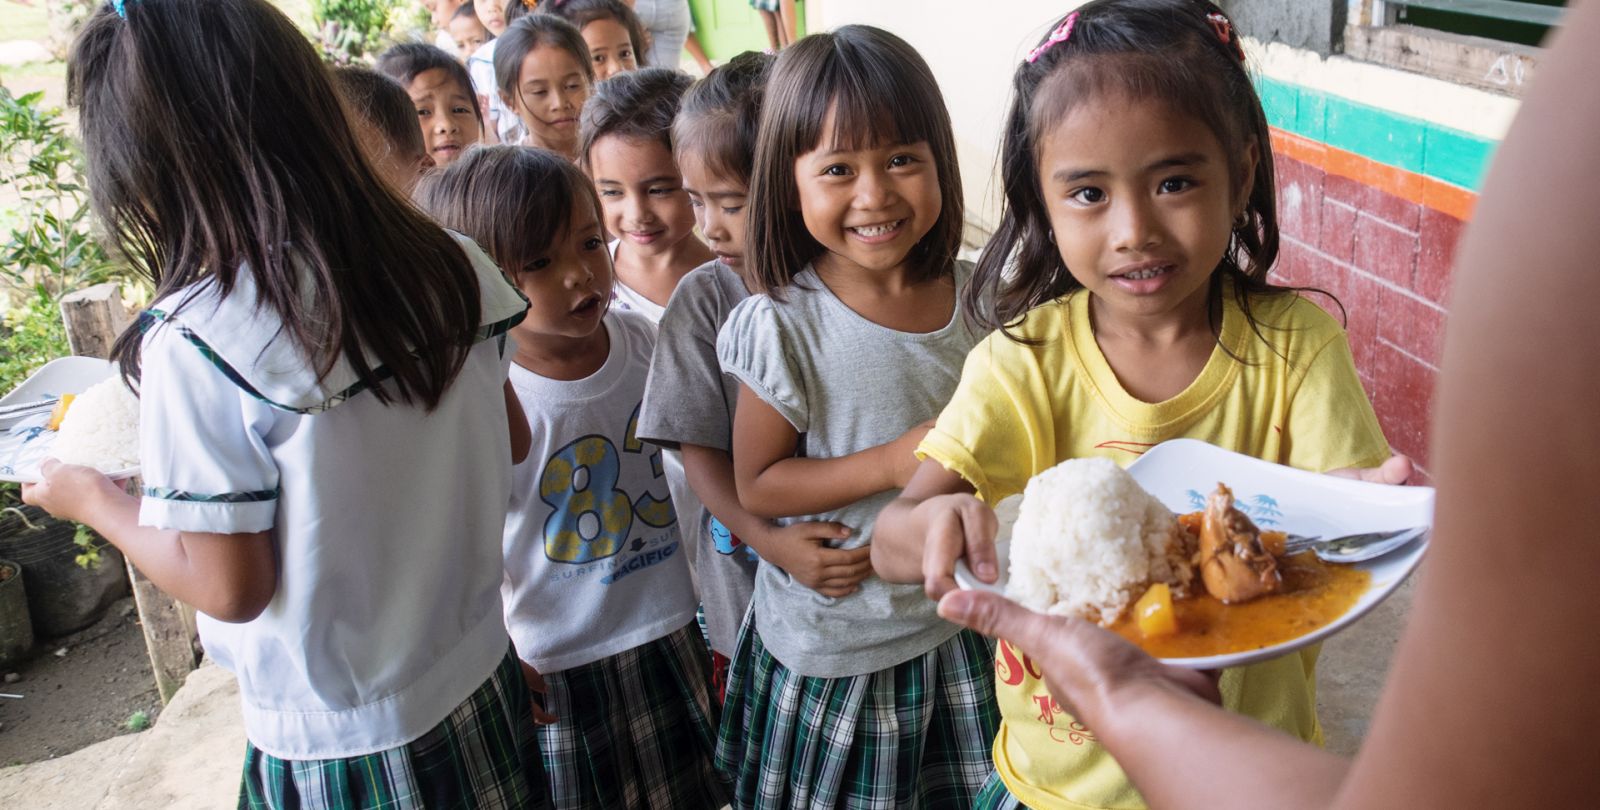 Des enfants aux philippines font la queue pour recevoir à manger